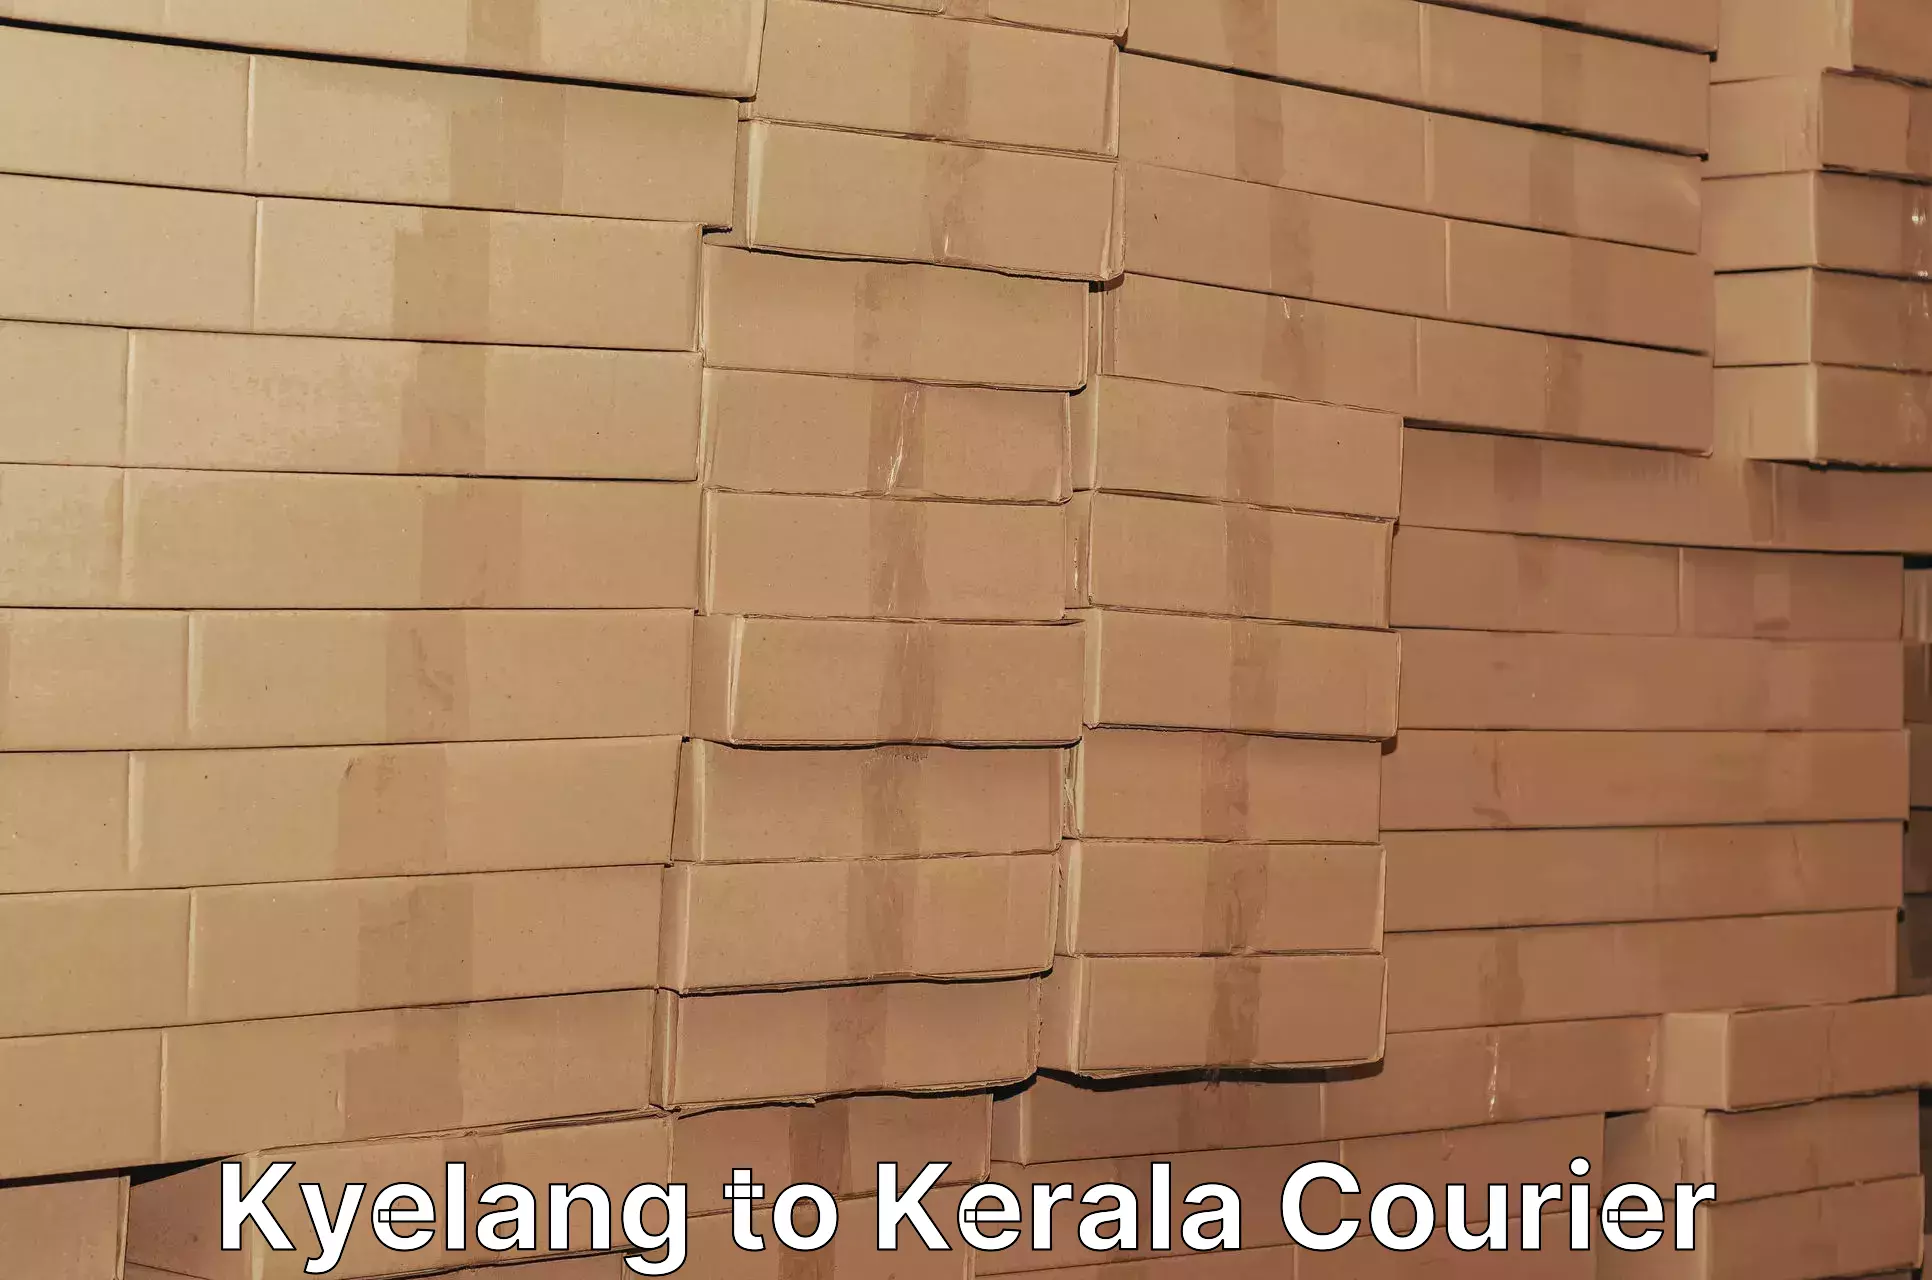 Seamless shipping experience Kyelang to Kerala